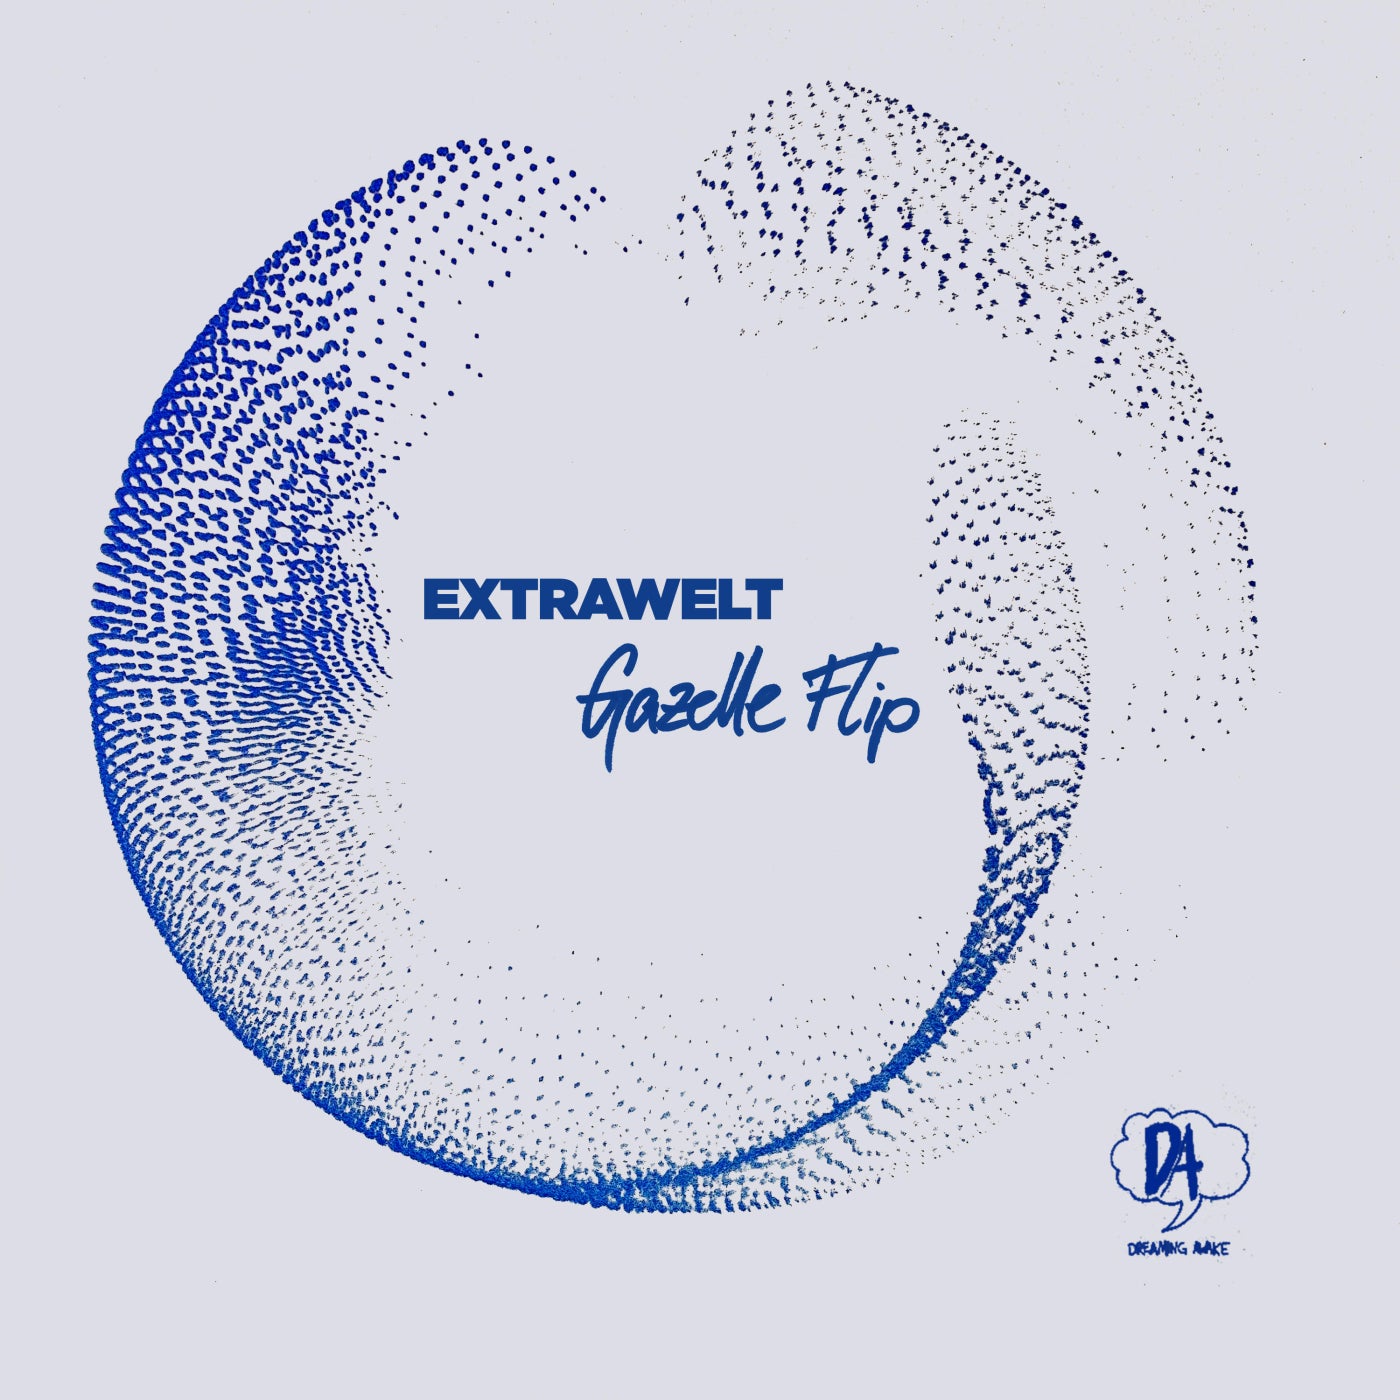 Download Extrawelt - Gazelle Flip on Electrobuzz